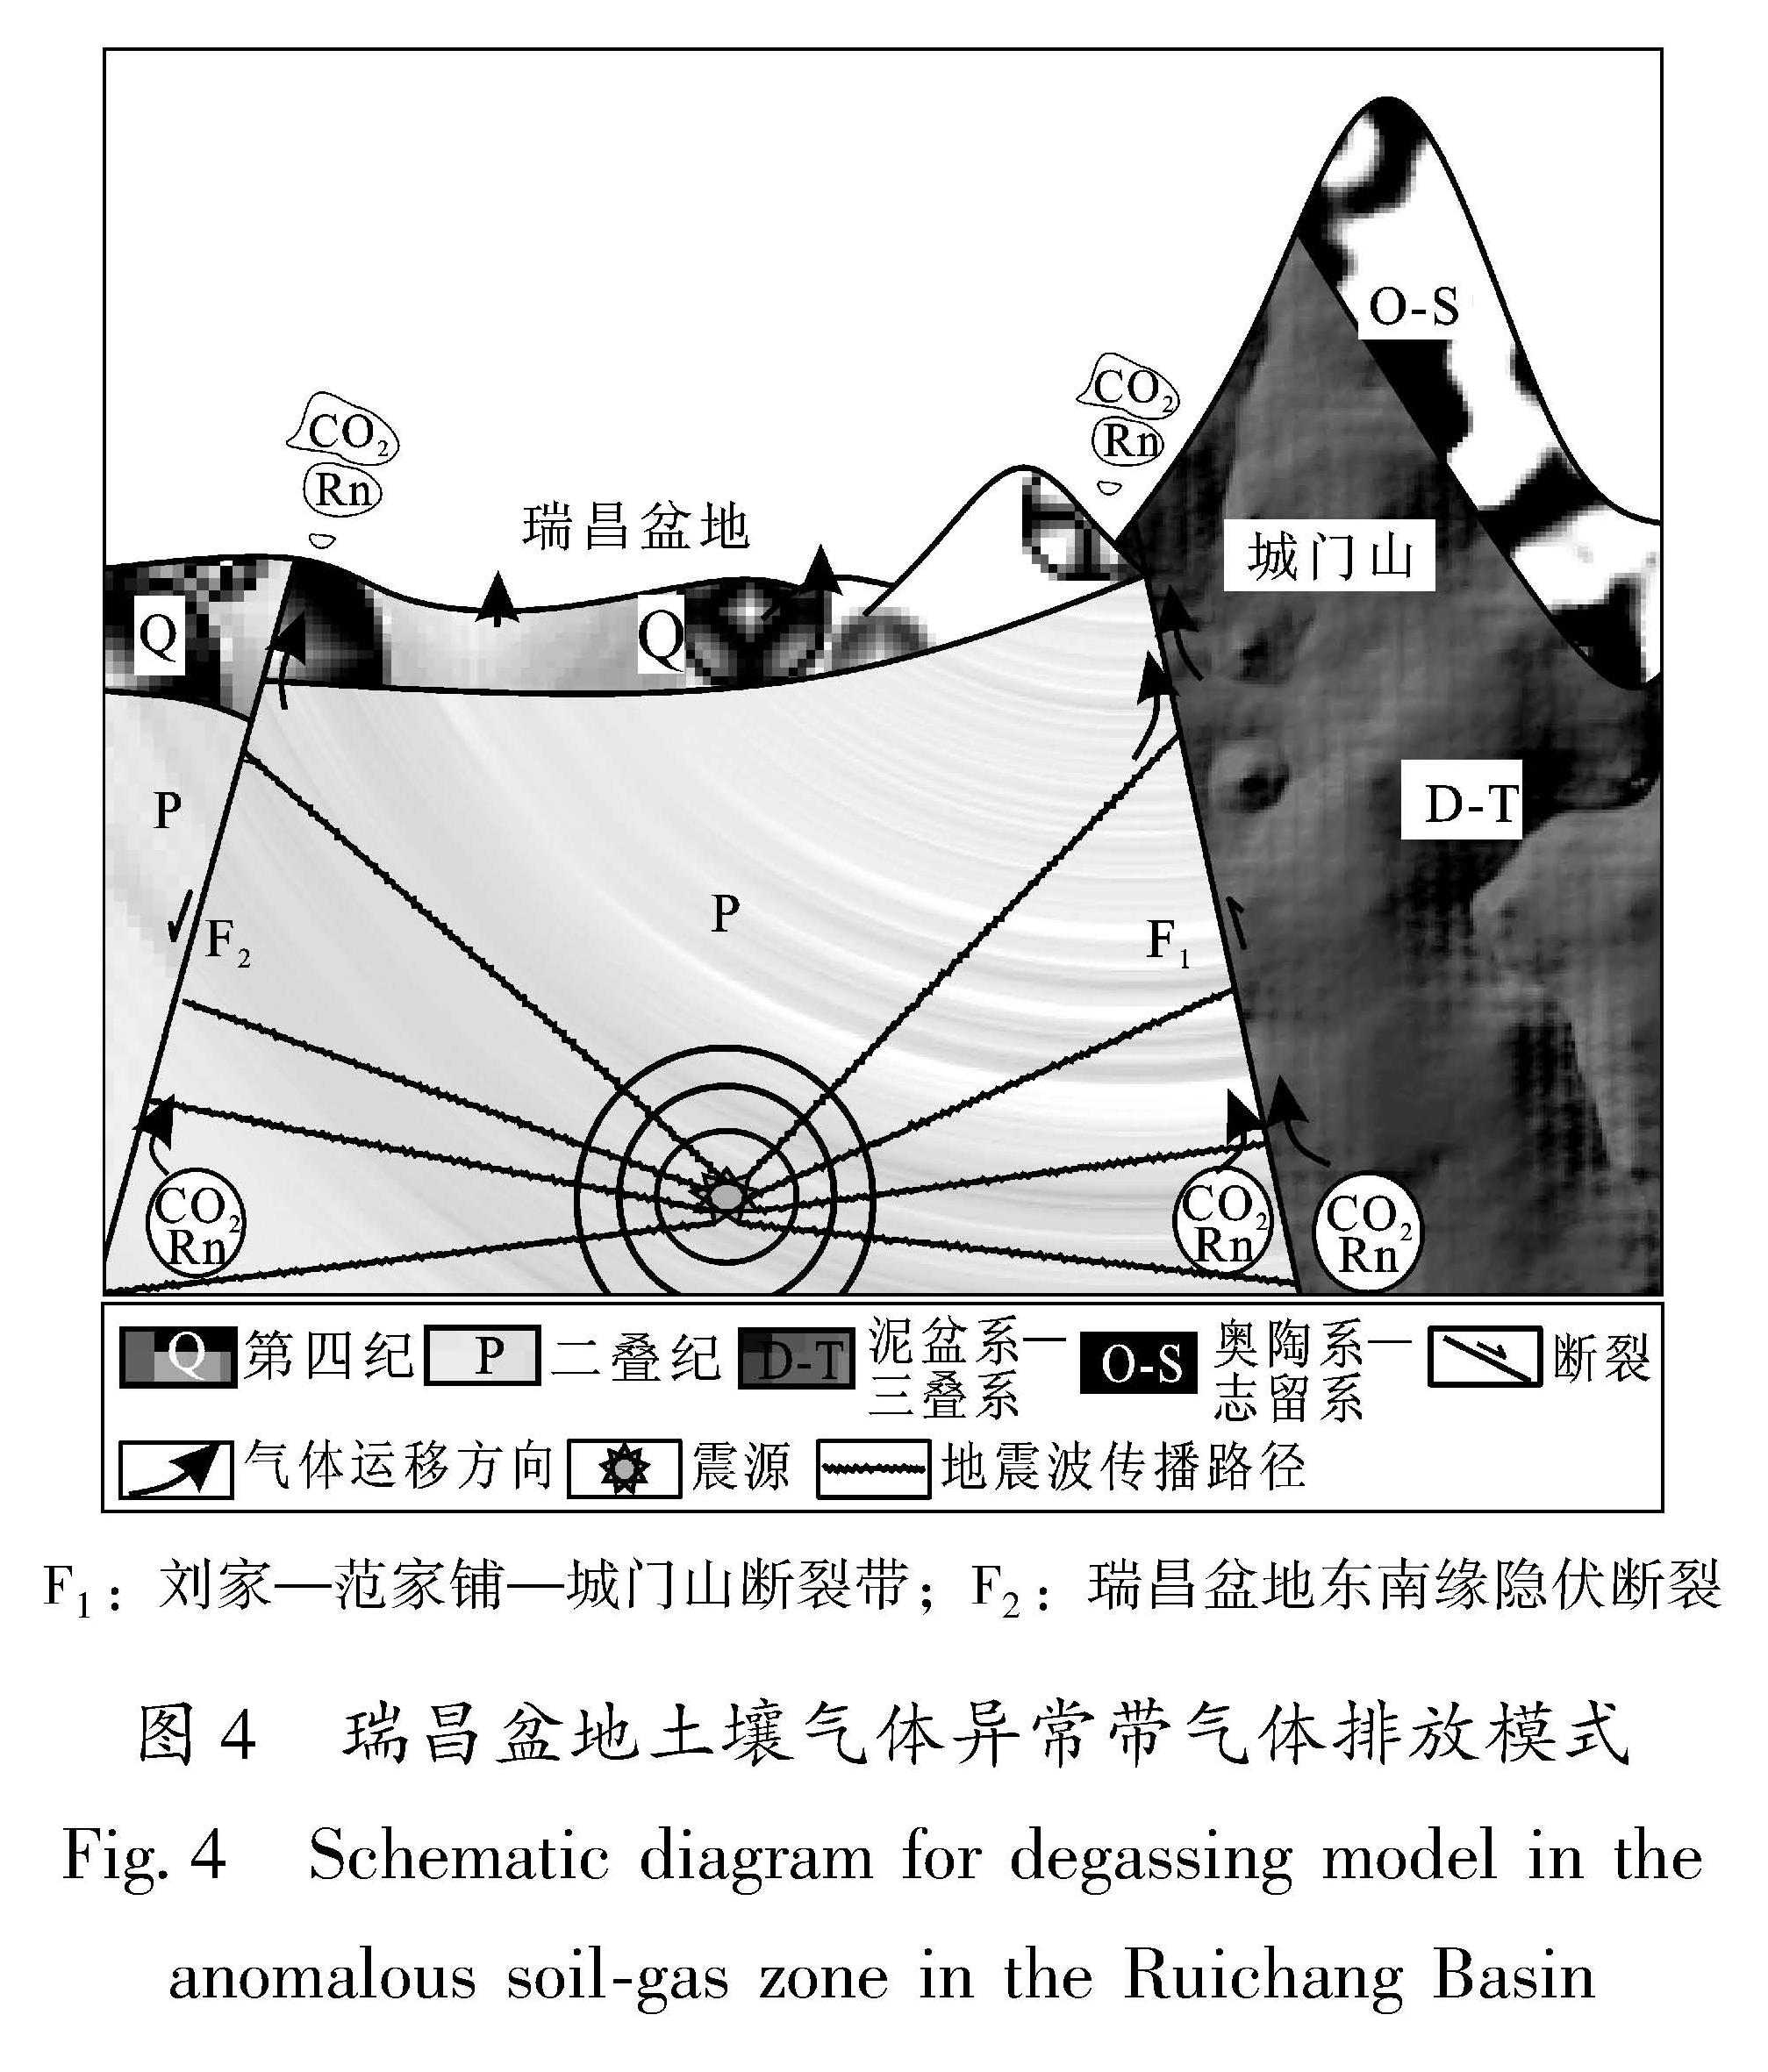 图4 瑞昌盆地土壤气体异常带气体排放模式<br/>Fig.4 Schematic diagram for degassing model in the anomalous soil-gas zone in the Ruichang Basin